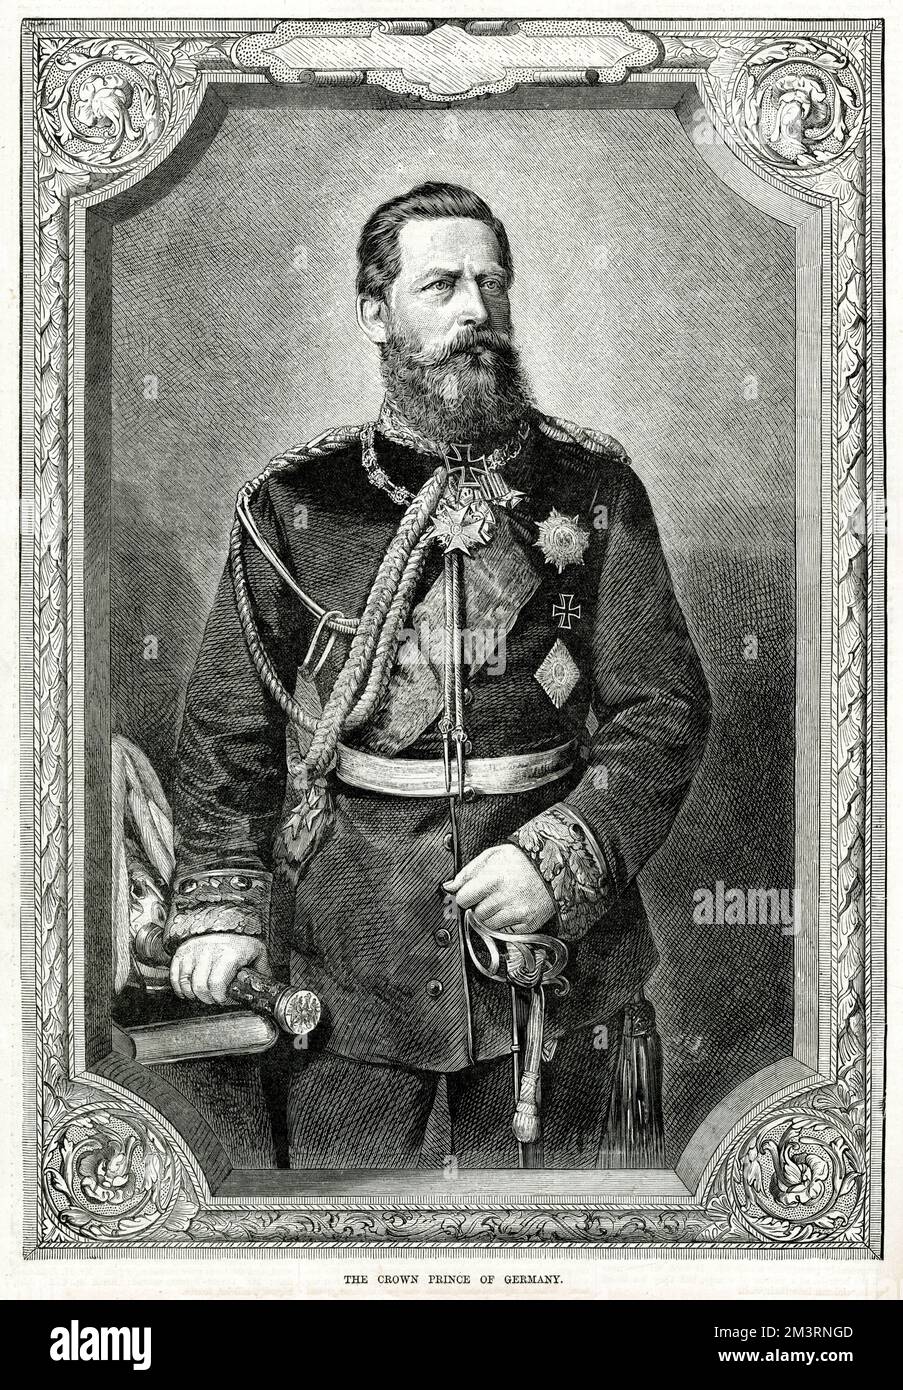 Frederick III., deutscher Kaiser (1831 - 1888), deutscher Kaiser und König von Preußen für neunundneunzig Tage im Jahr 1888, dem Jahr der drei Kaiser. Datum: 1883 Stockfoto